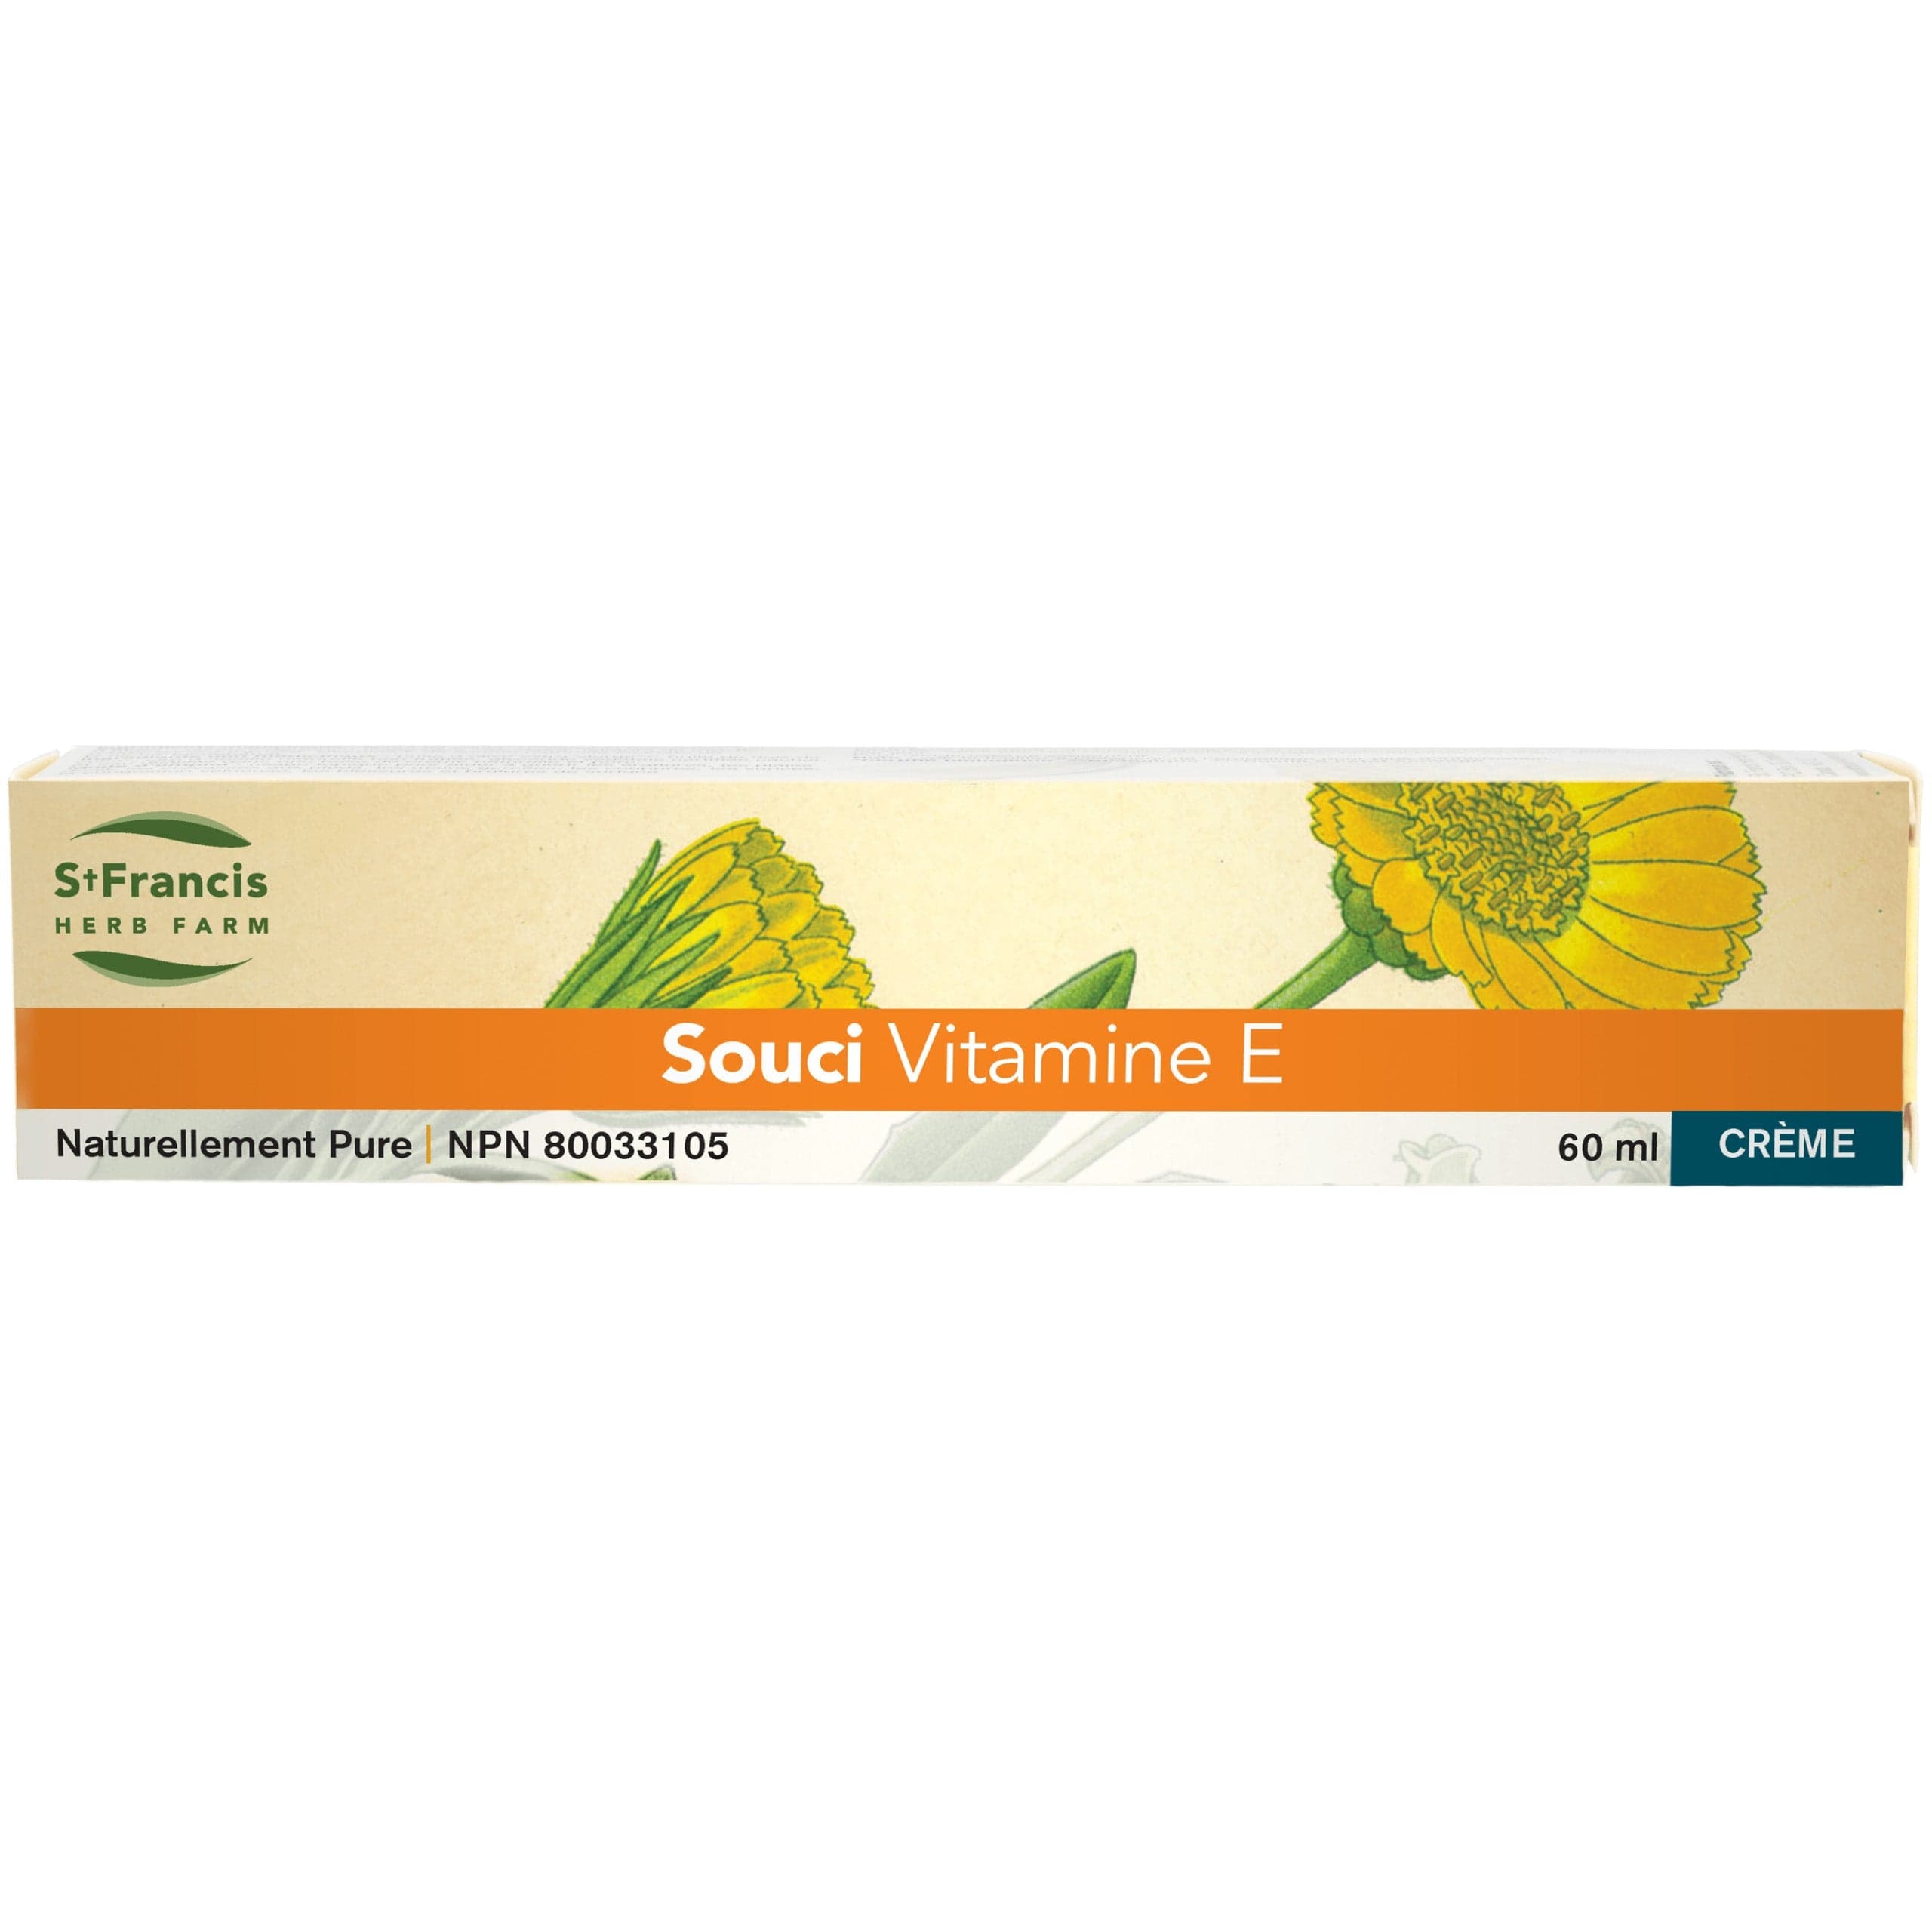 ST-FRANCIS HERB FARM Suppléments Crème calendula vitamine E 60ml